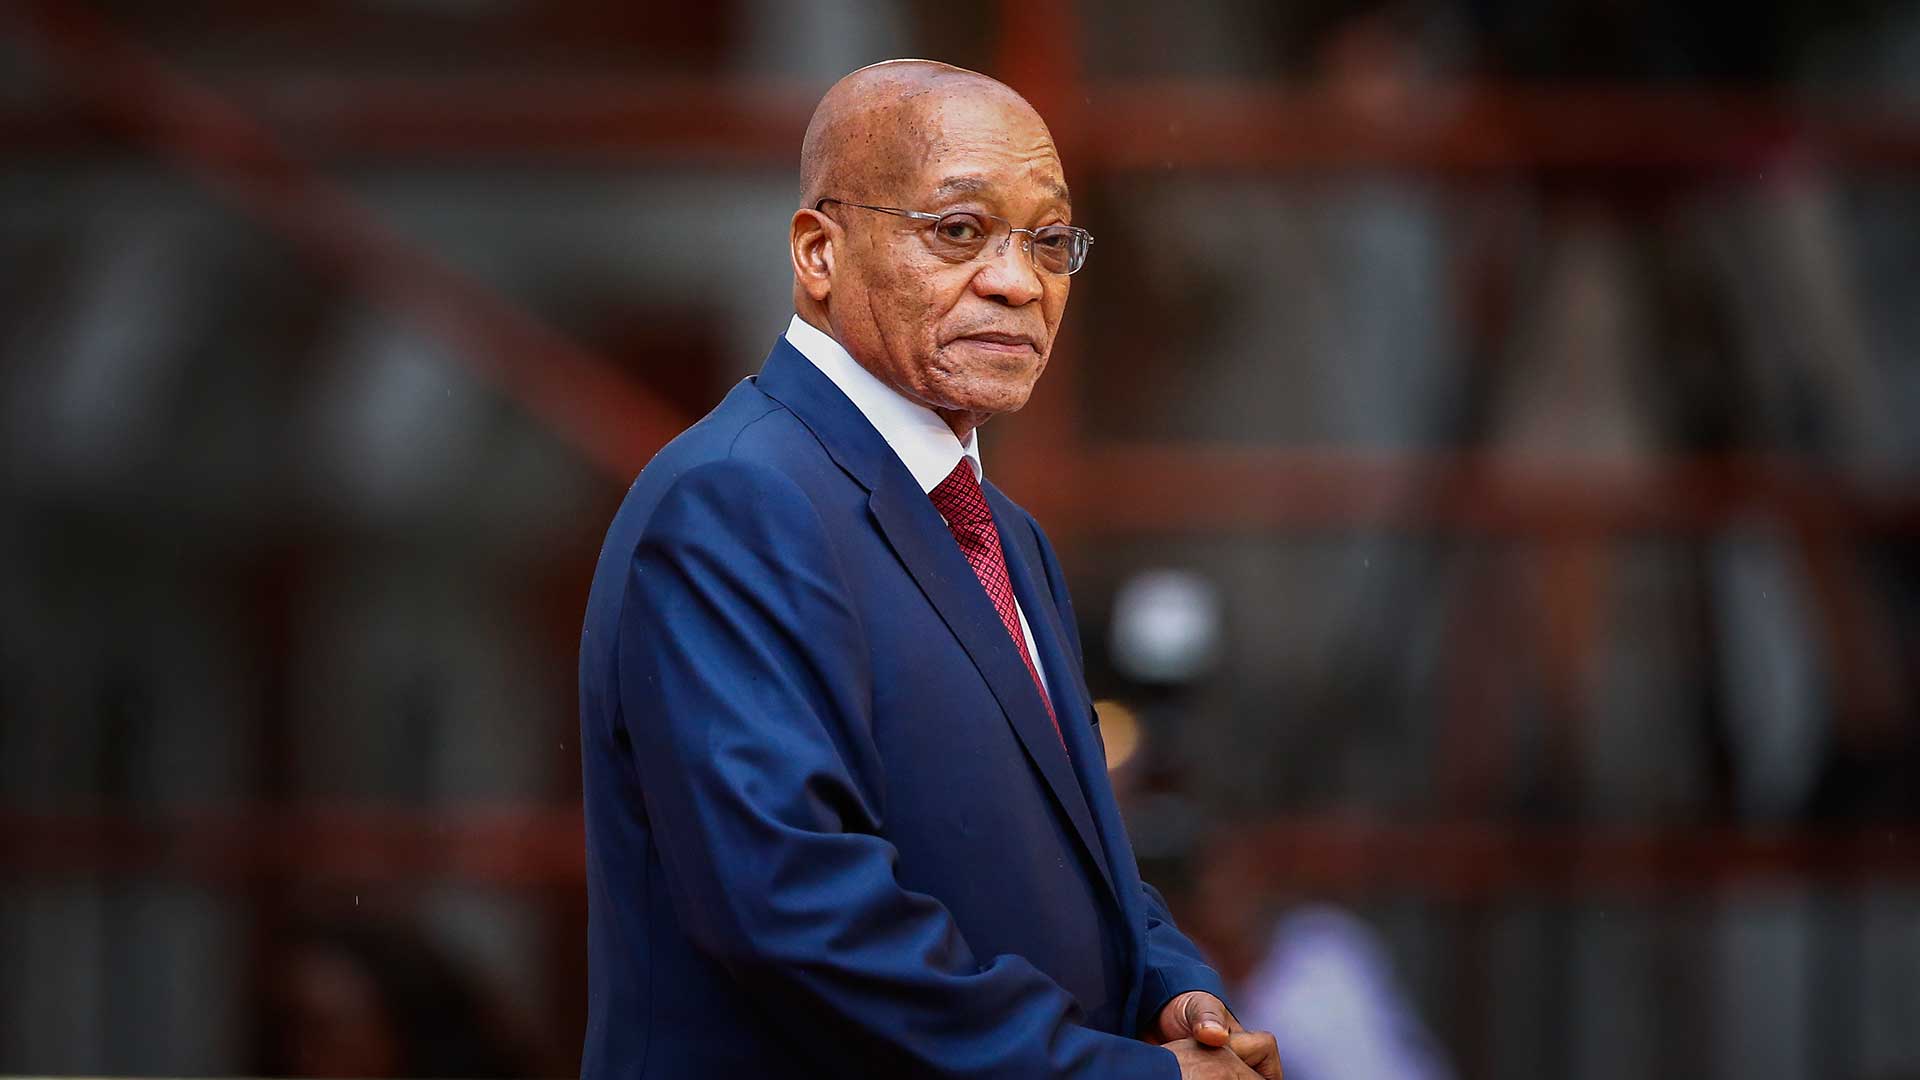 El partido oficialista de Sudáfrica decide la salida del presidente Zuma